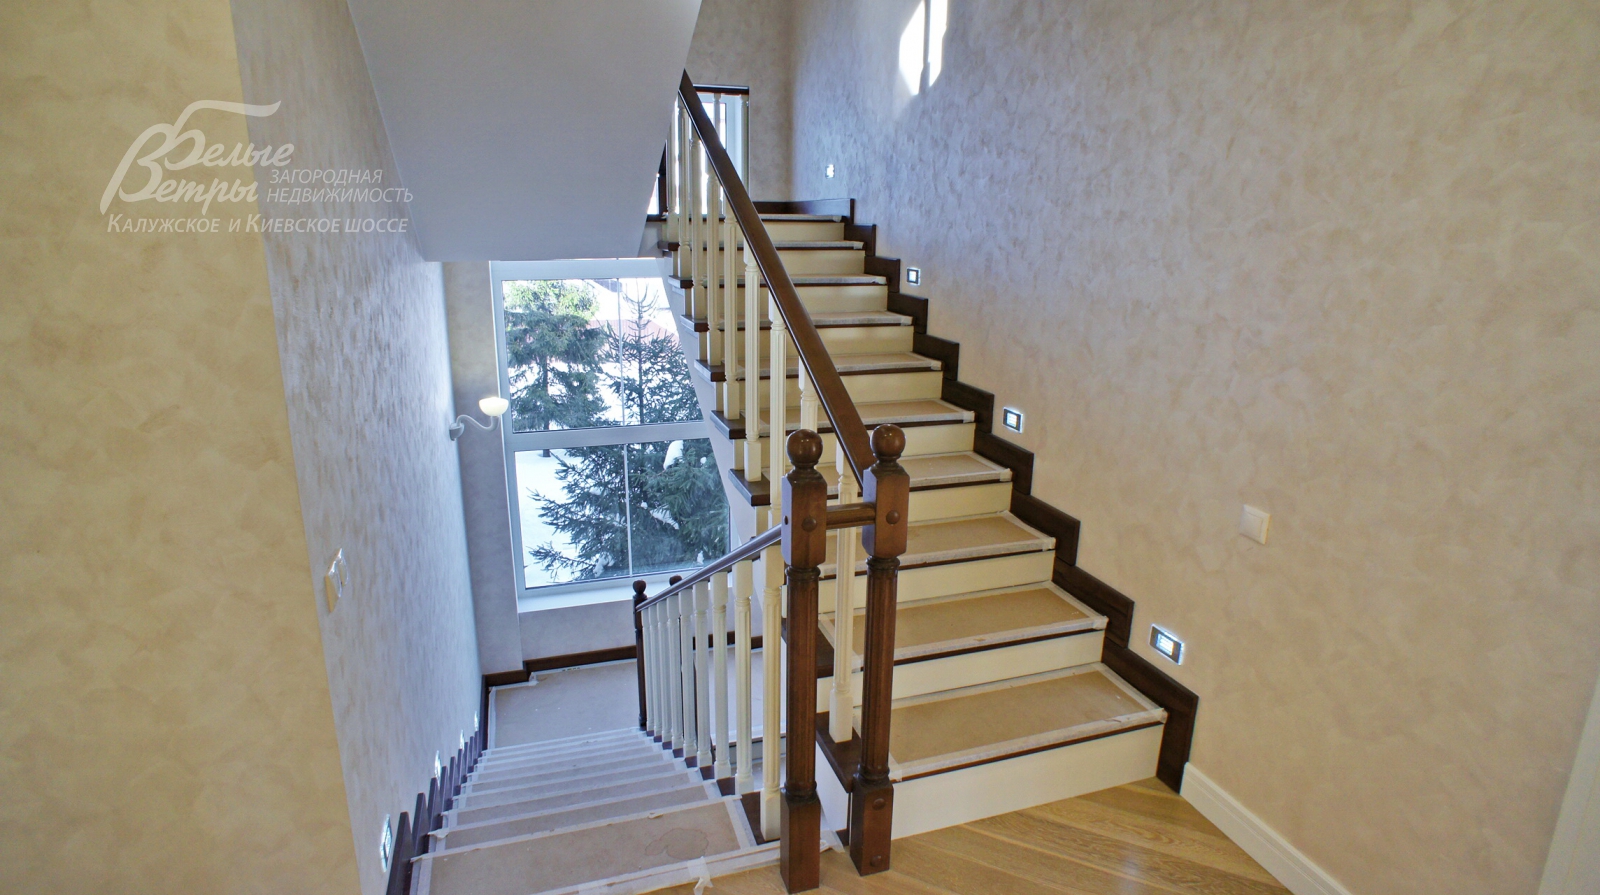 Лестница железобетонная монолитная, ступени деревянные.